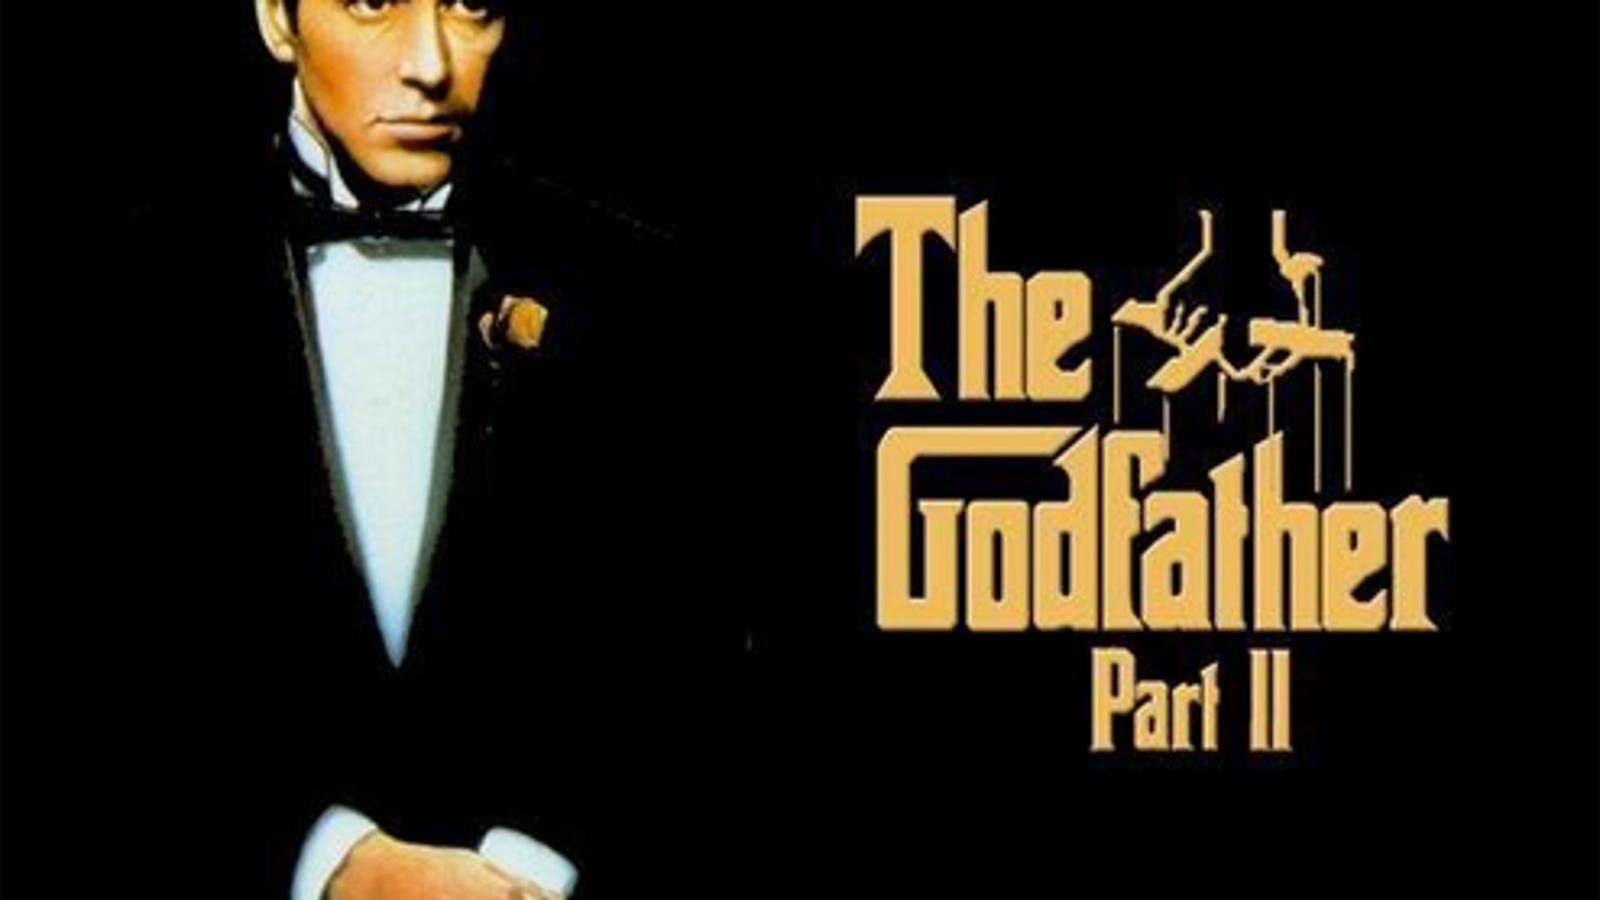 The Godfather 1974. Аль Пачино крестный отец.